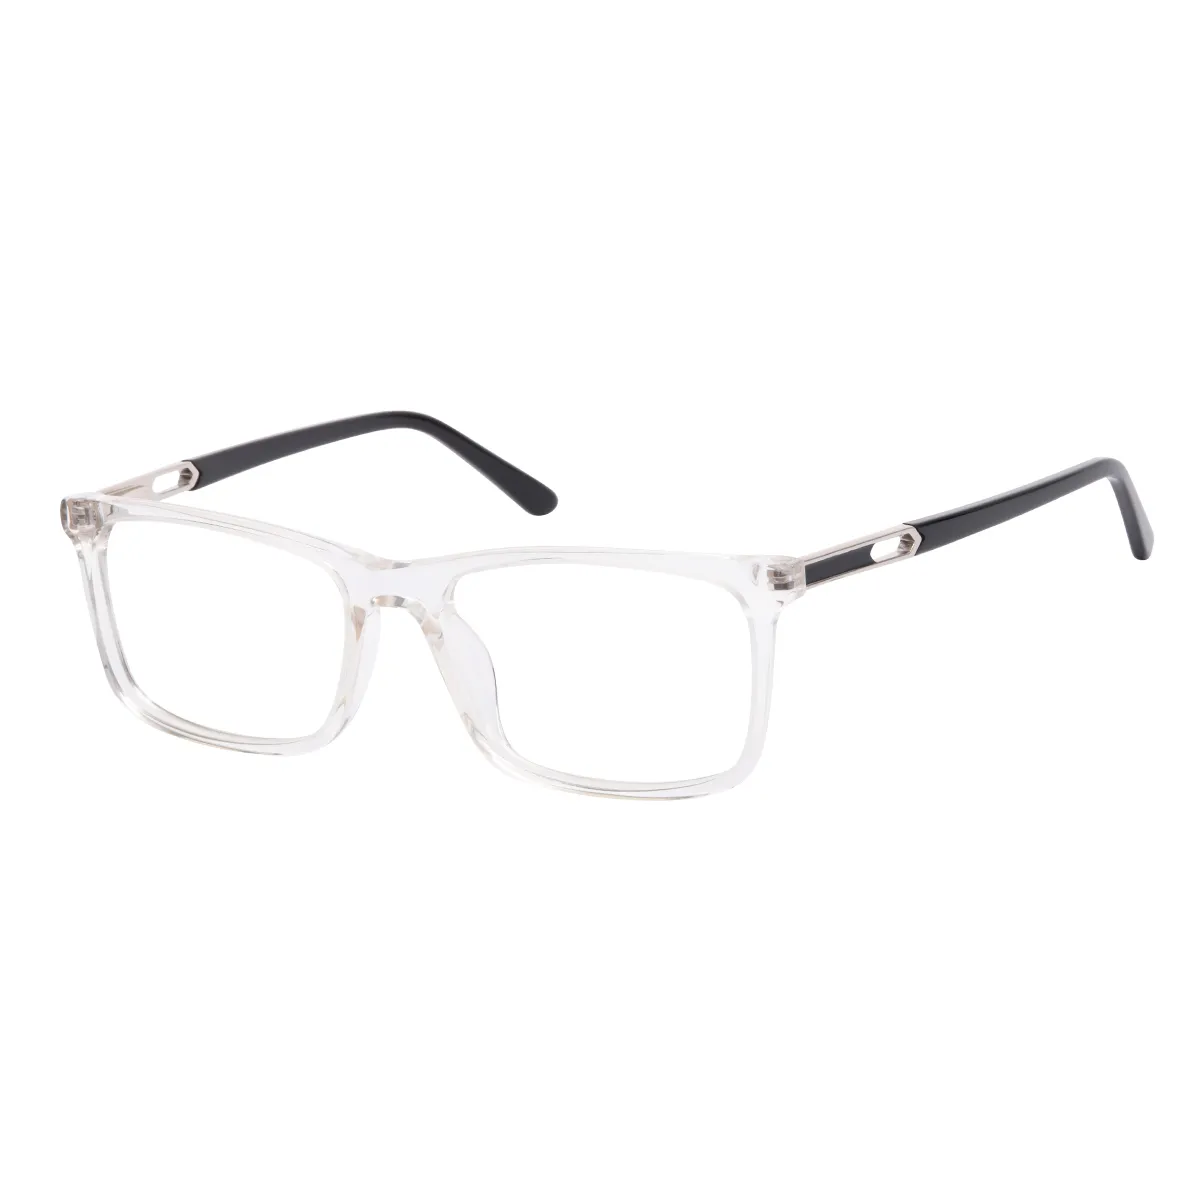 Jocab - Rectangle White Glasses for Men & Women